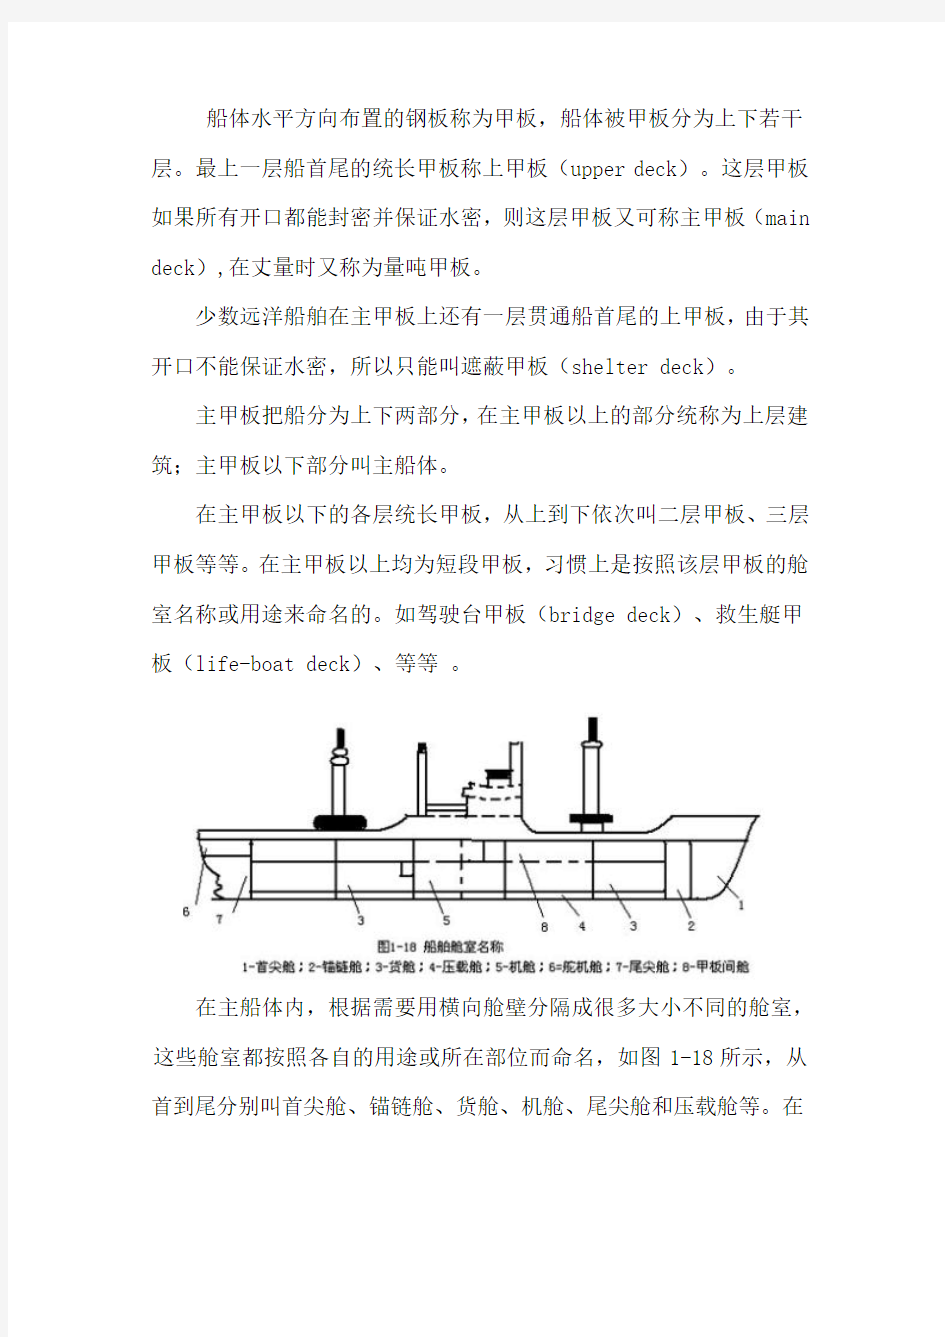 船体主要构件结构图